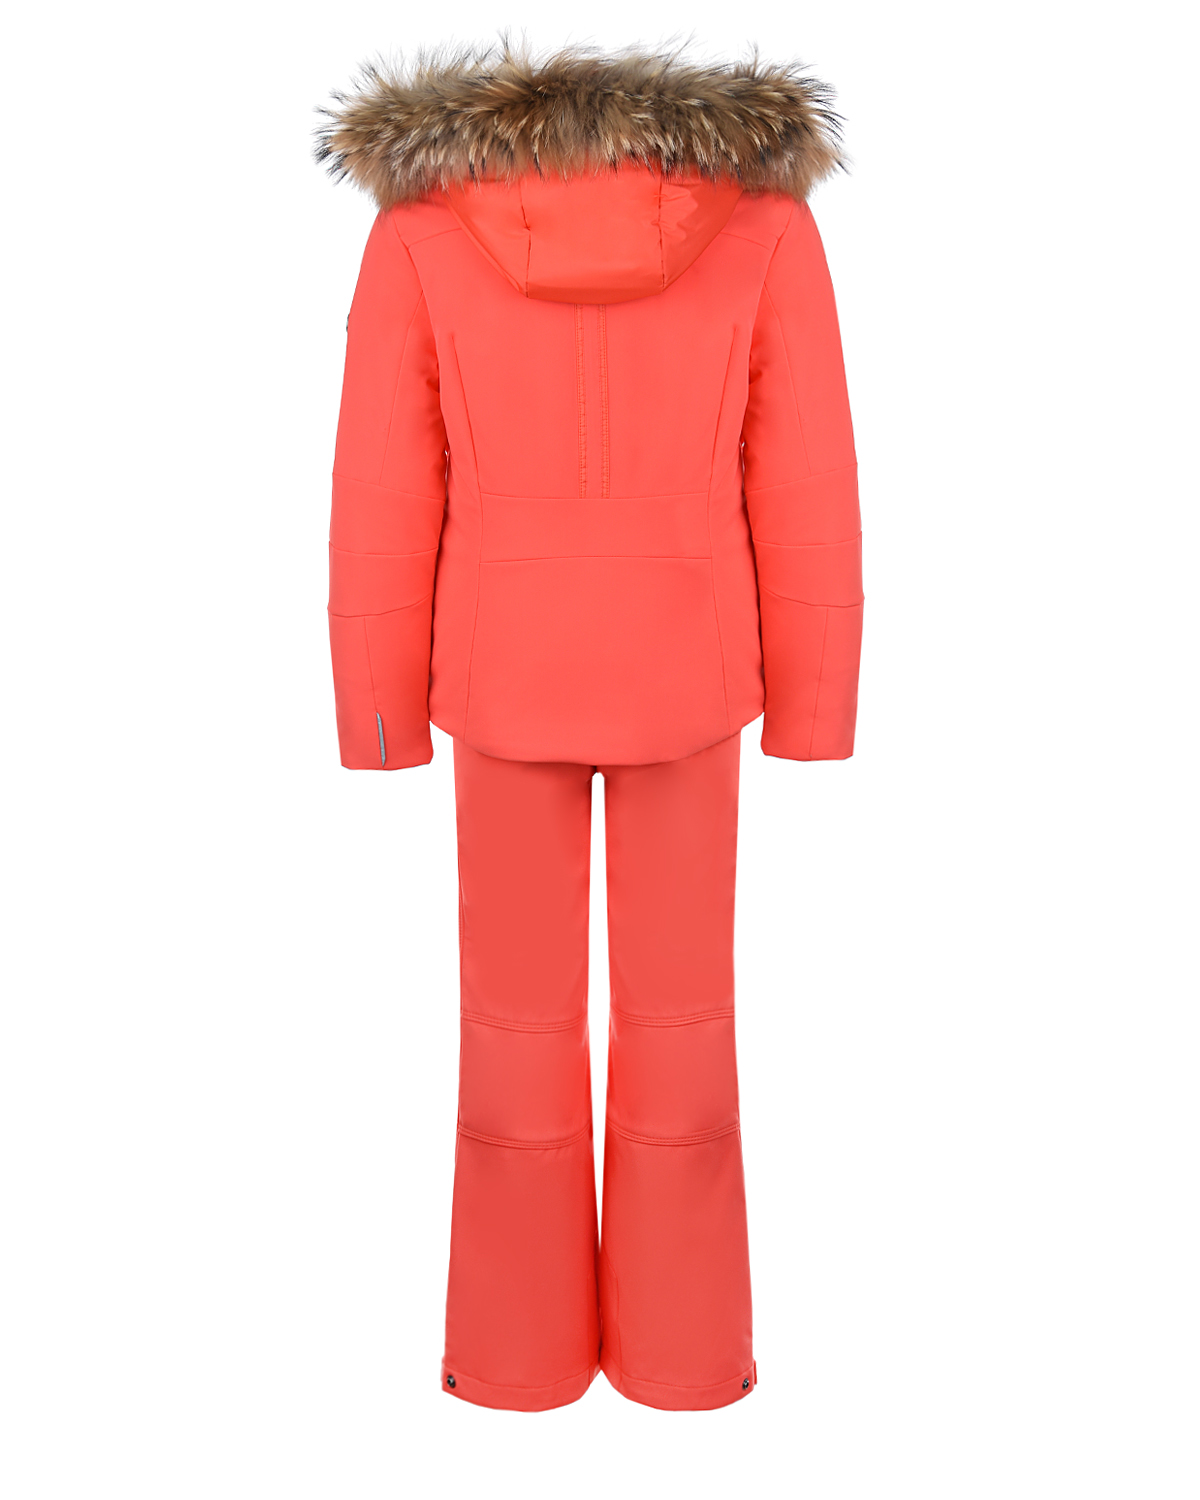 Горнолыжный комплект из оранжевой куртки и брюк Poivre Blanc детский, размер 140, цвет оранжевый - фото 2